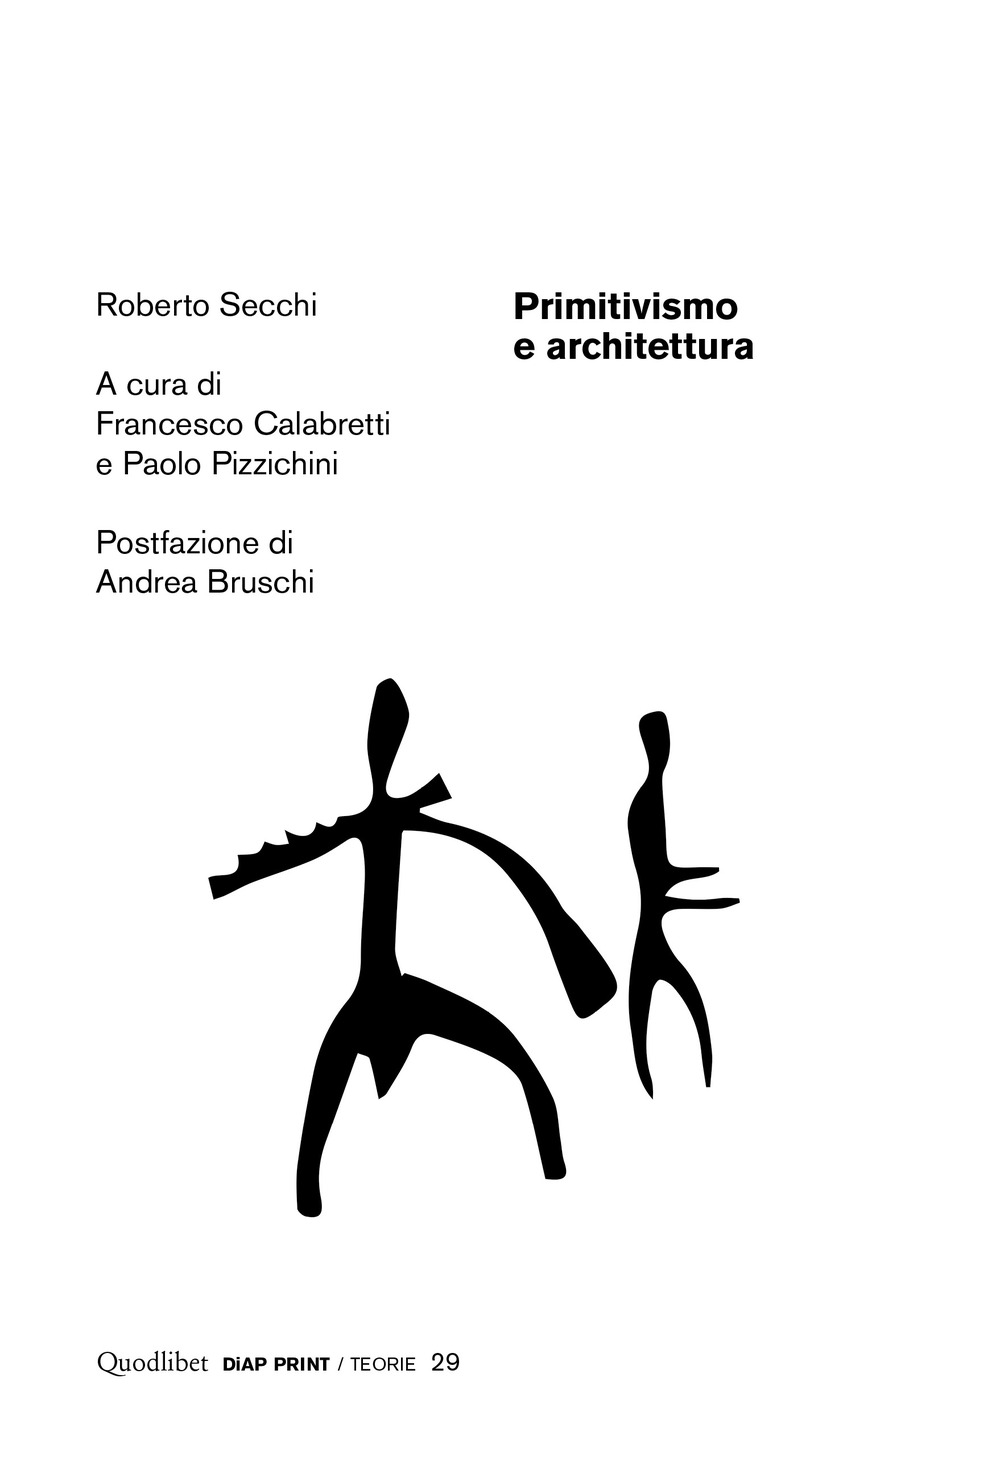 Image of Primitivismo e architettura